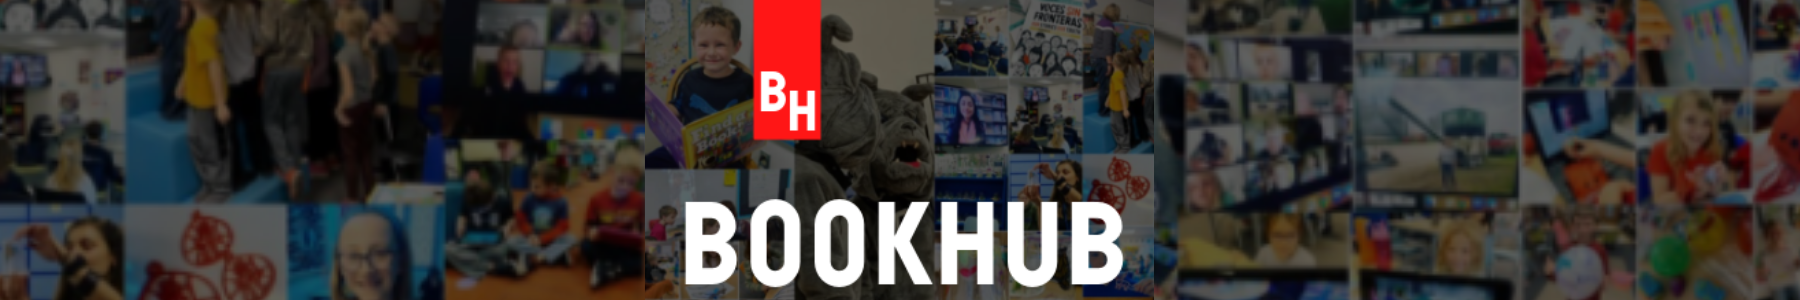 bookhub logo